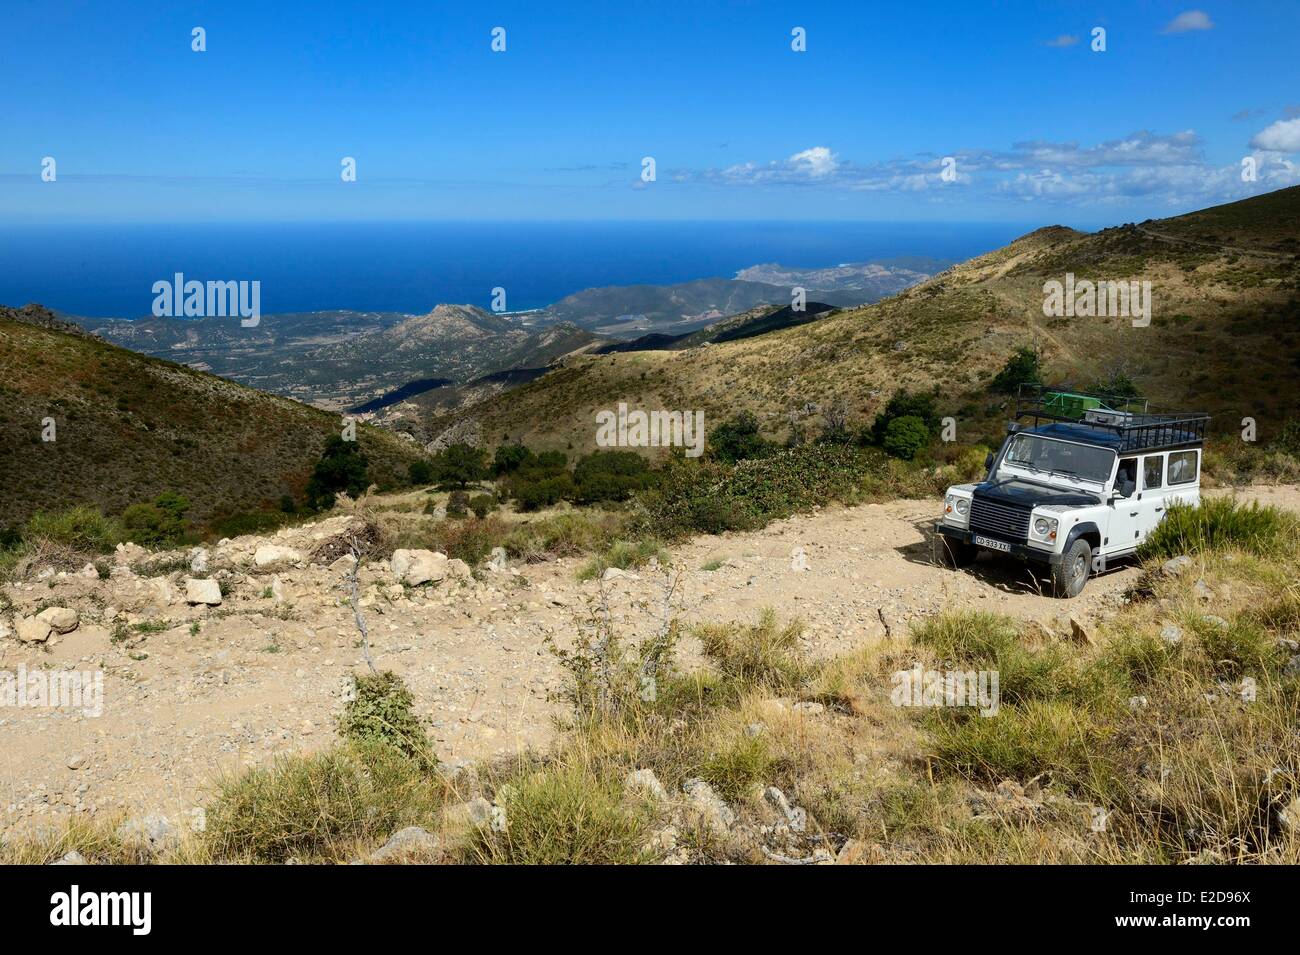 France, Haute Corse, Balagne, discovery of the Giussani in 4x4 vehicle using a track around the Bocca di a Battaglia Stock Photo